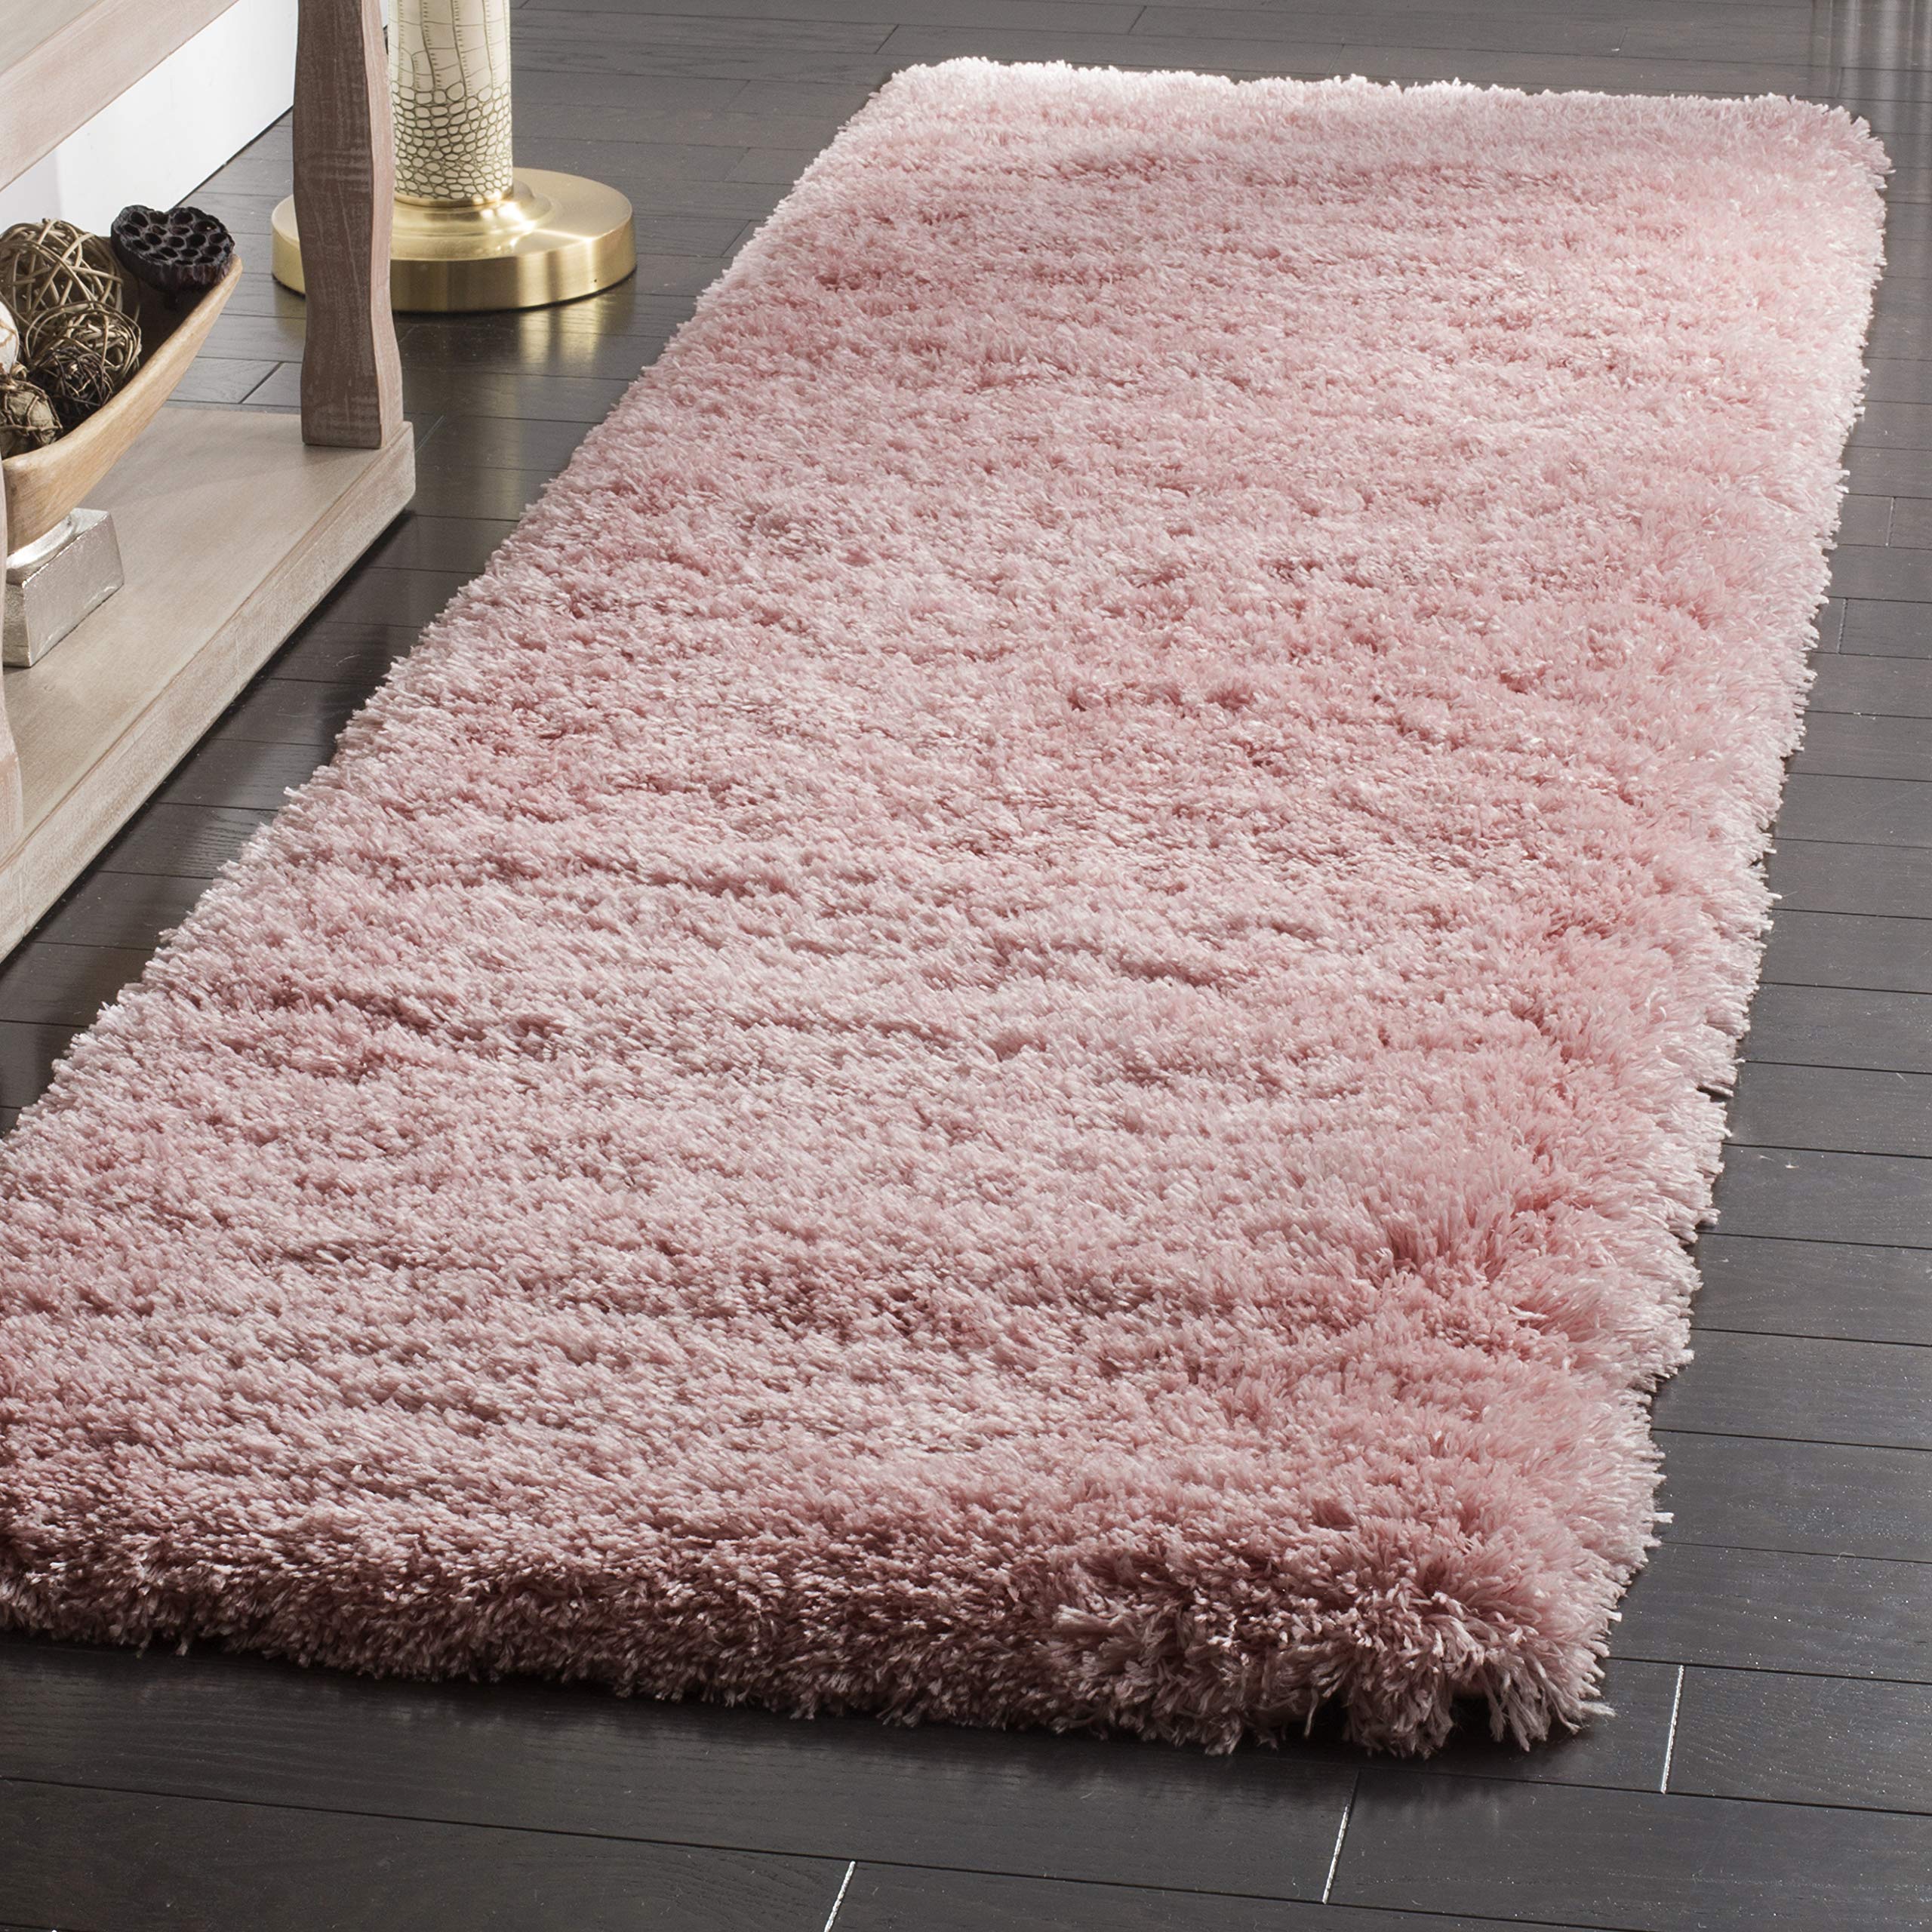 Safavieh Polar Shag 系列长条地毯 - 2 英尺 3 英尺 x 6 英尺，浅粉色，纯色迷人设...